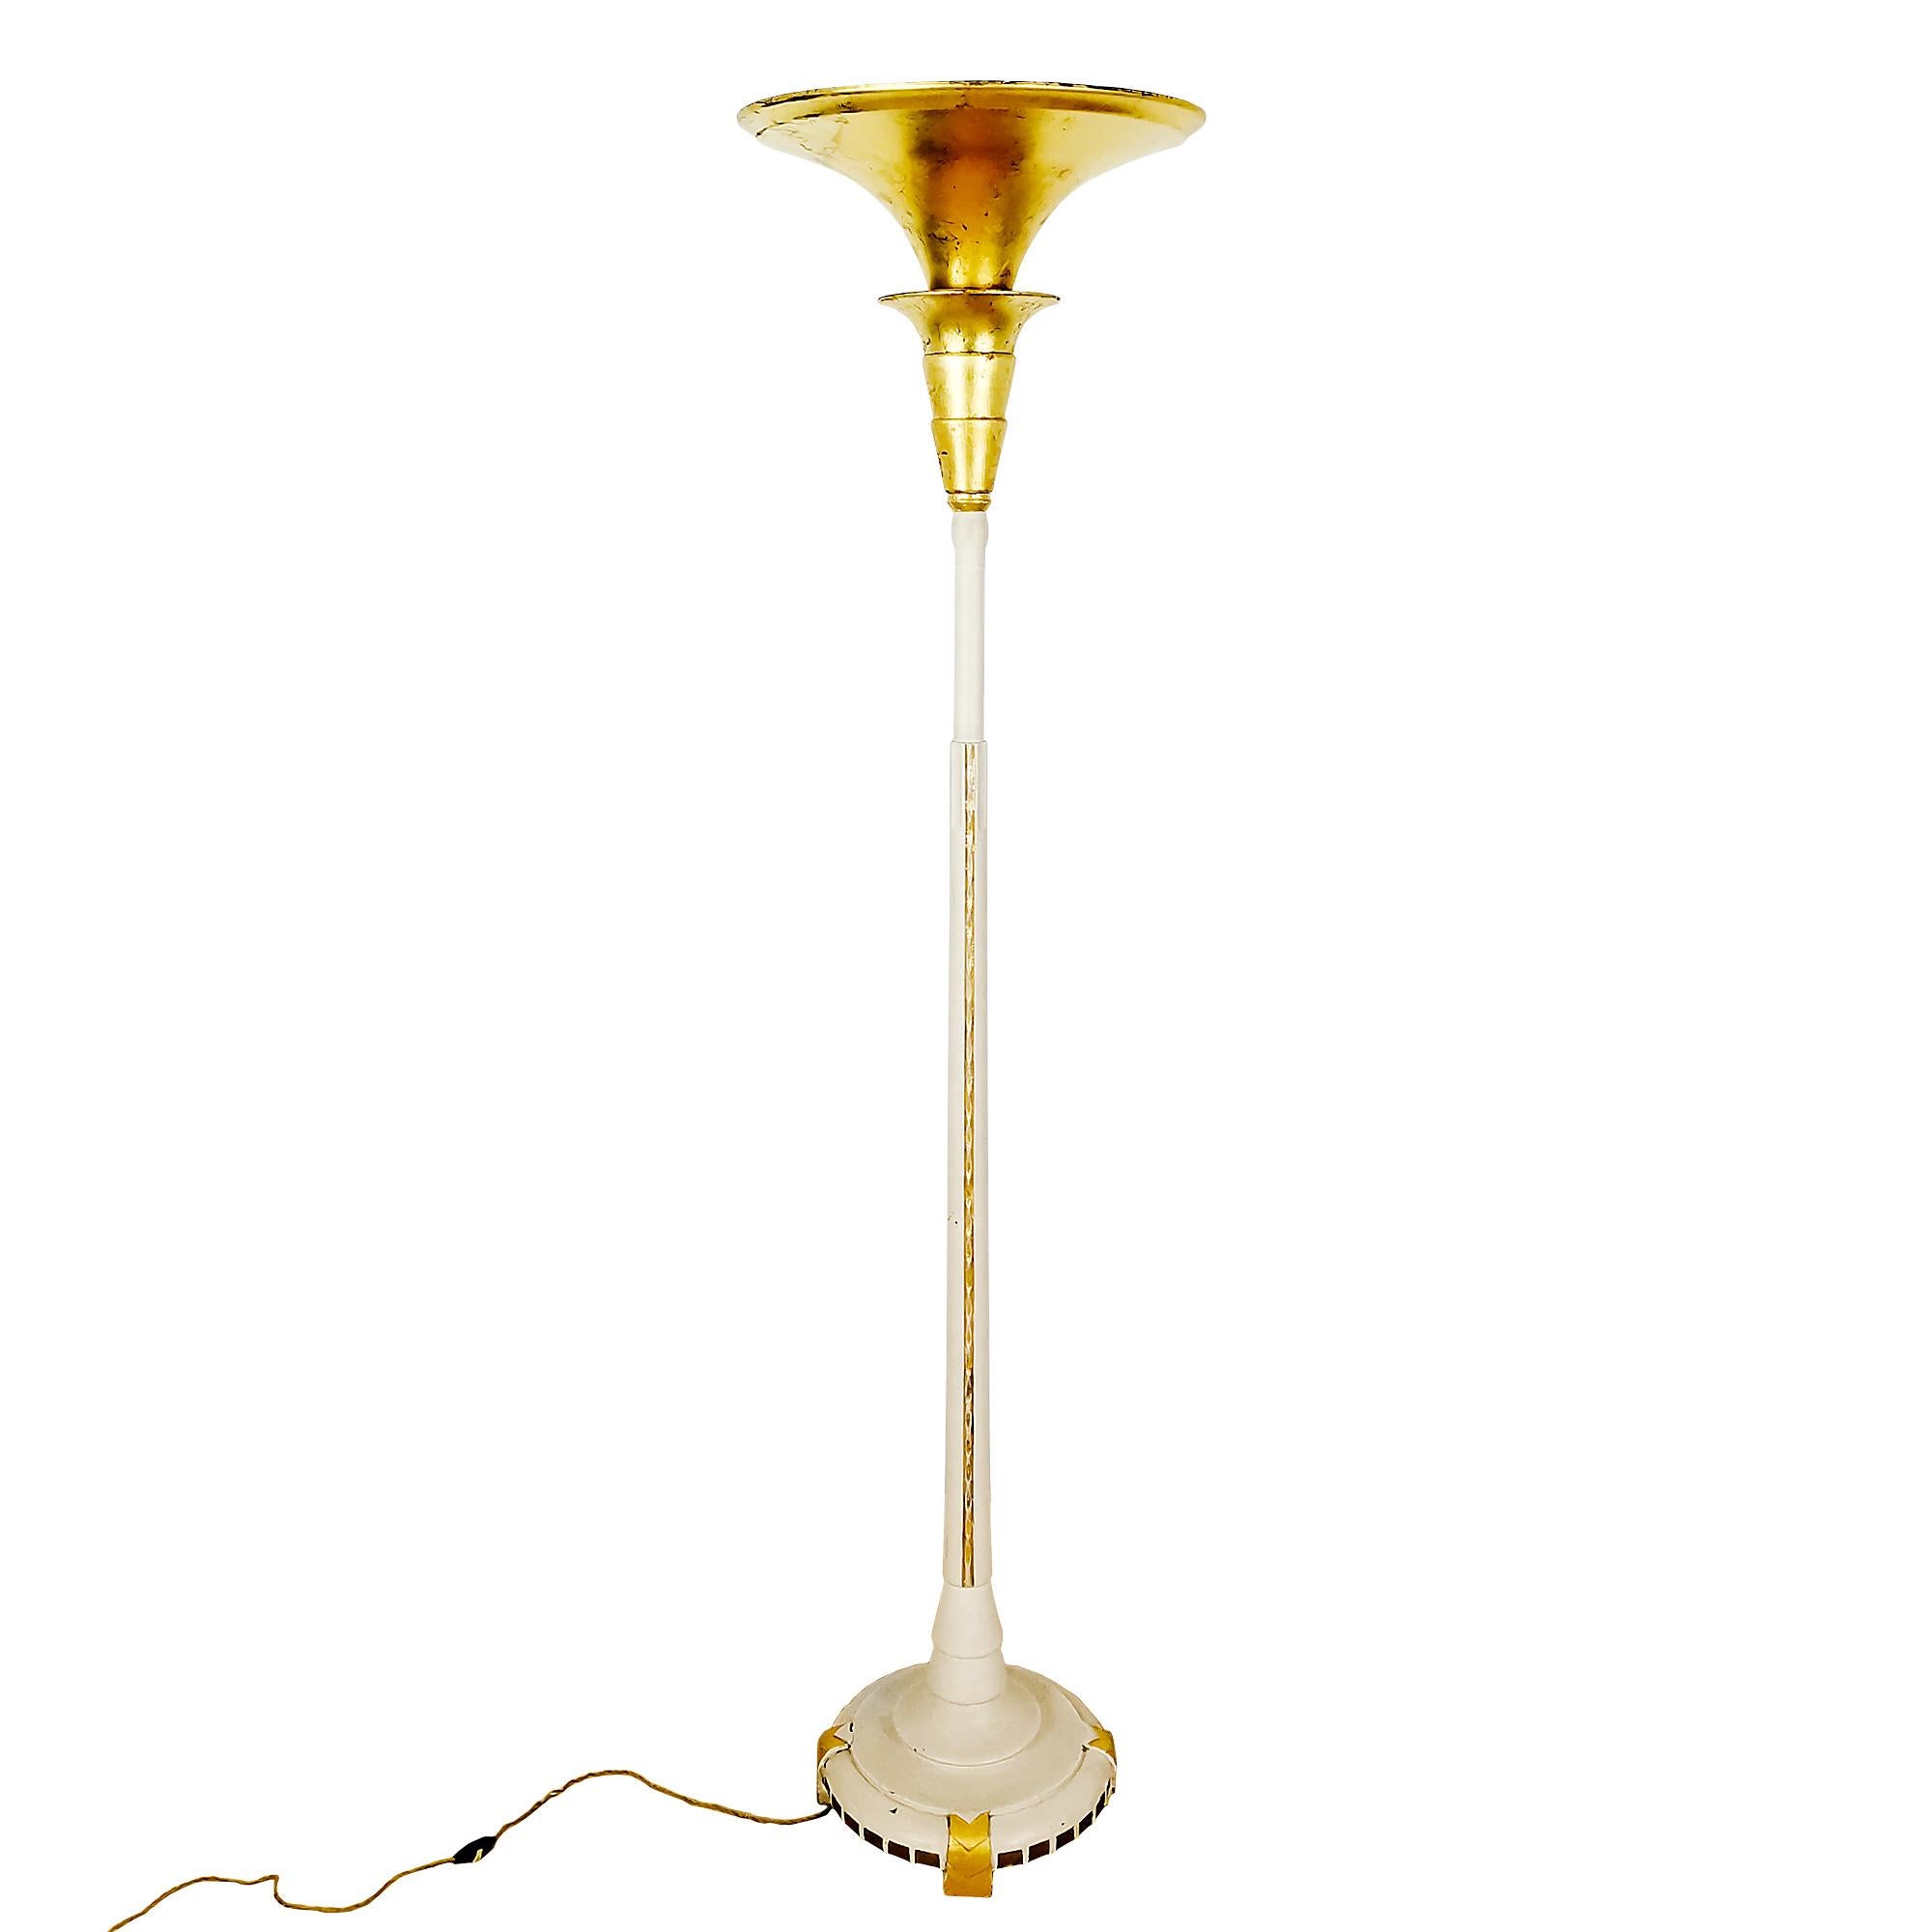 Belgian Art Deco Floor Lamp in Carved Solid Wood and Golden Details - Belgium 1925 For Sale